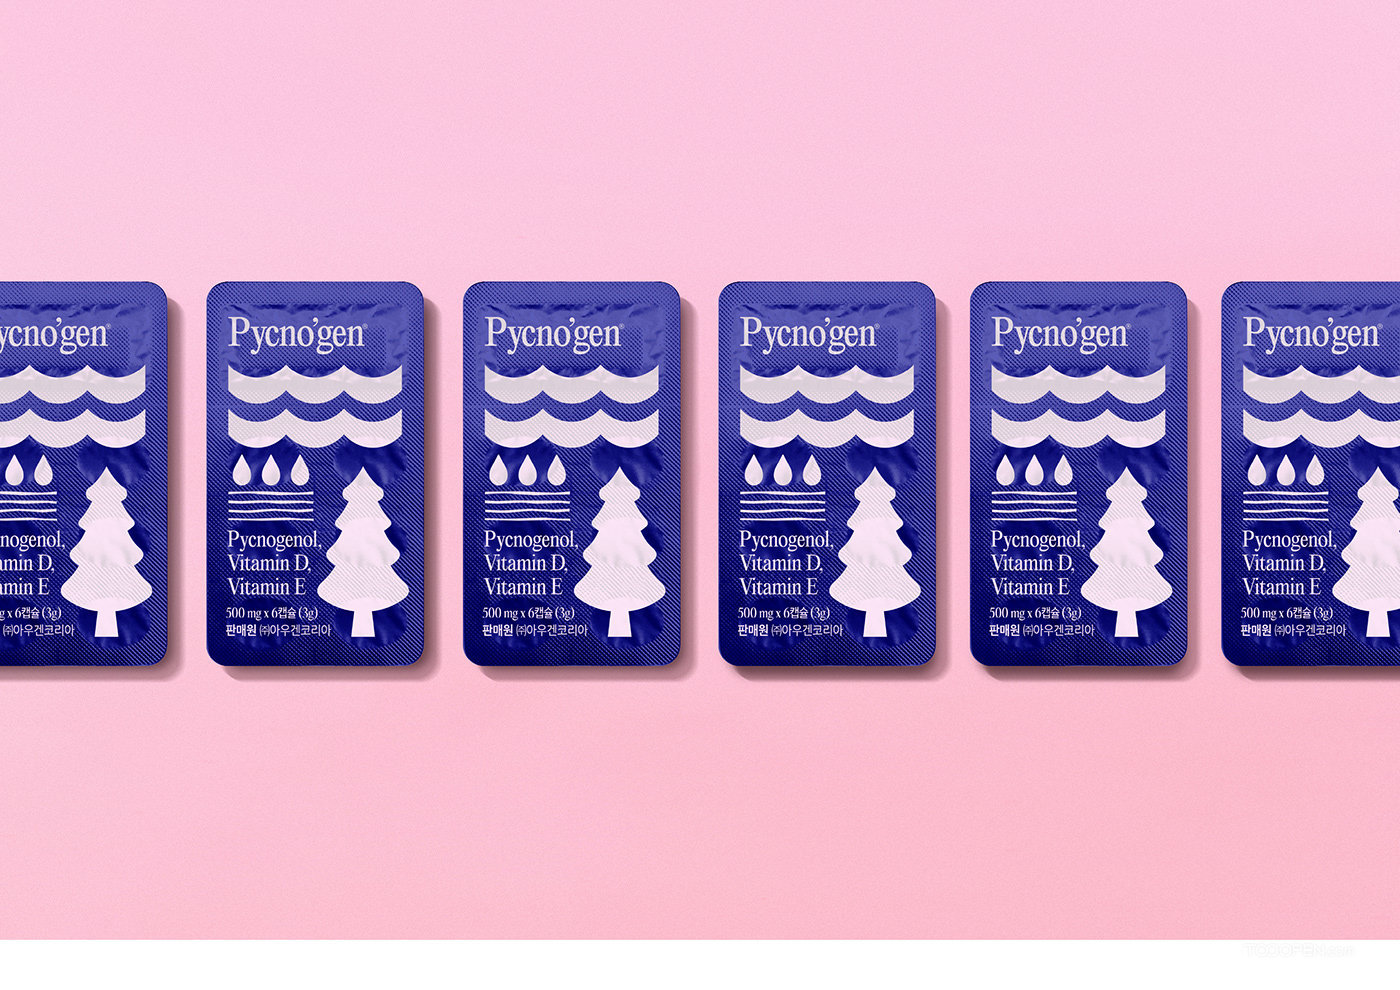 法国海岸松树皮提取物Pycno'gen保健品包装设计欣赏-05